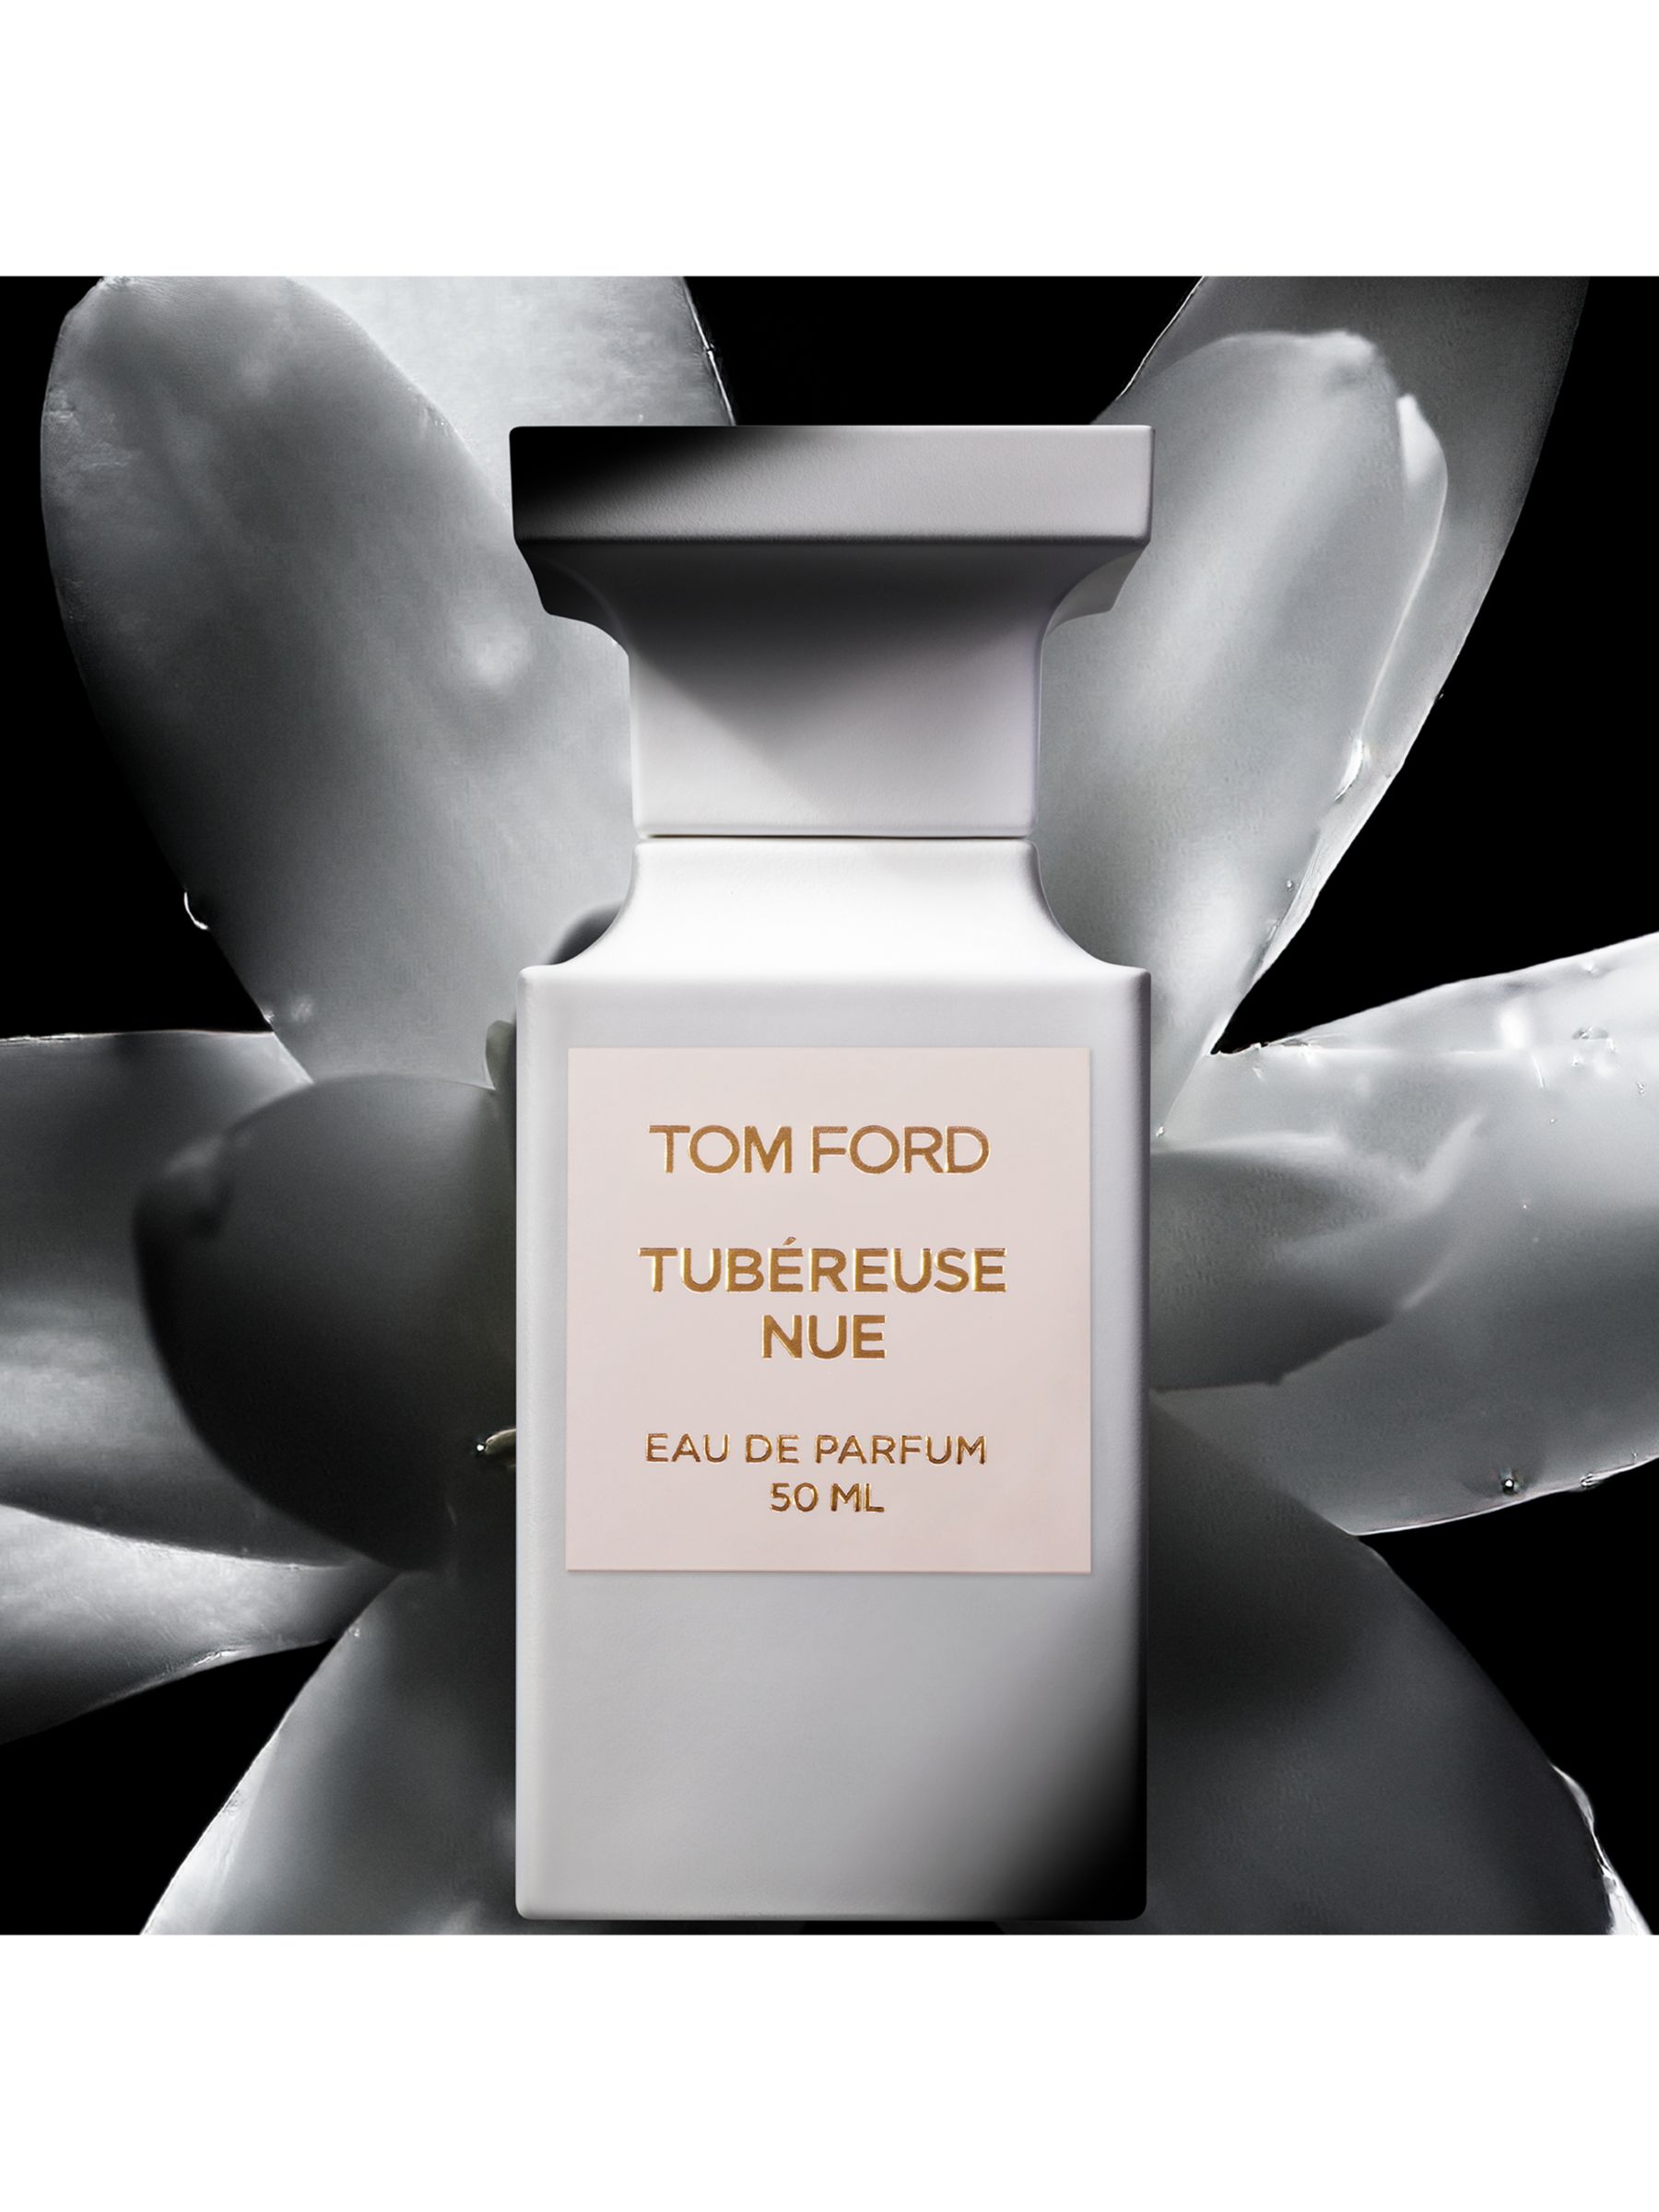 TOM FORD Private Blend Tubéreuse Nue Eau de Parfum, 50ml at John Lewis &  Partners